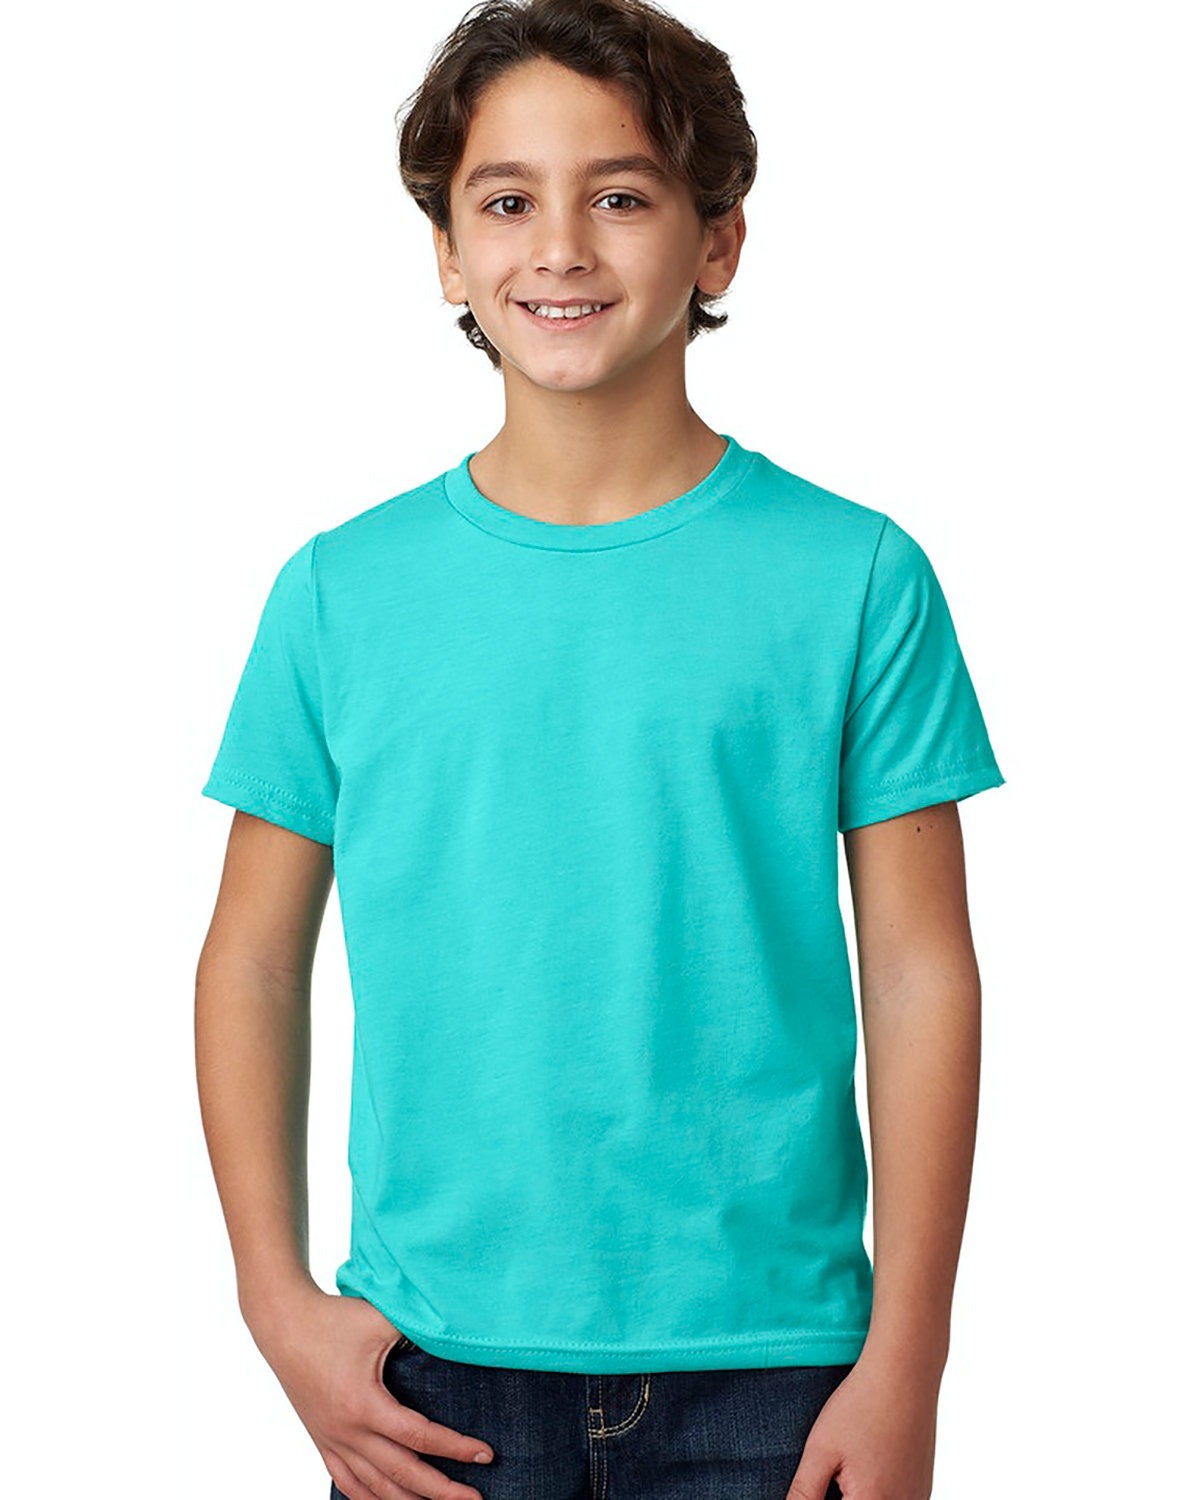 Next Level Kids' T-Shirt - Blue